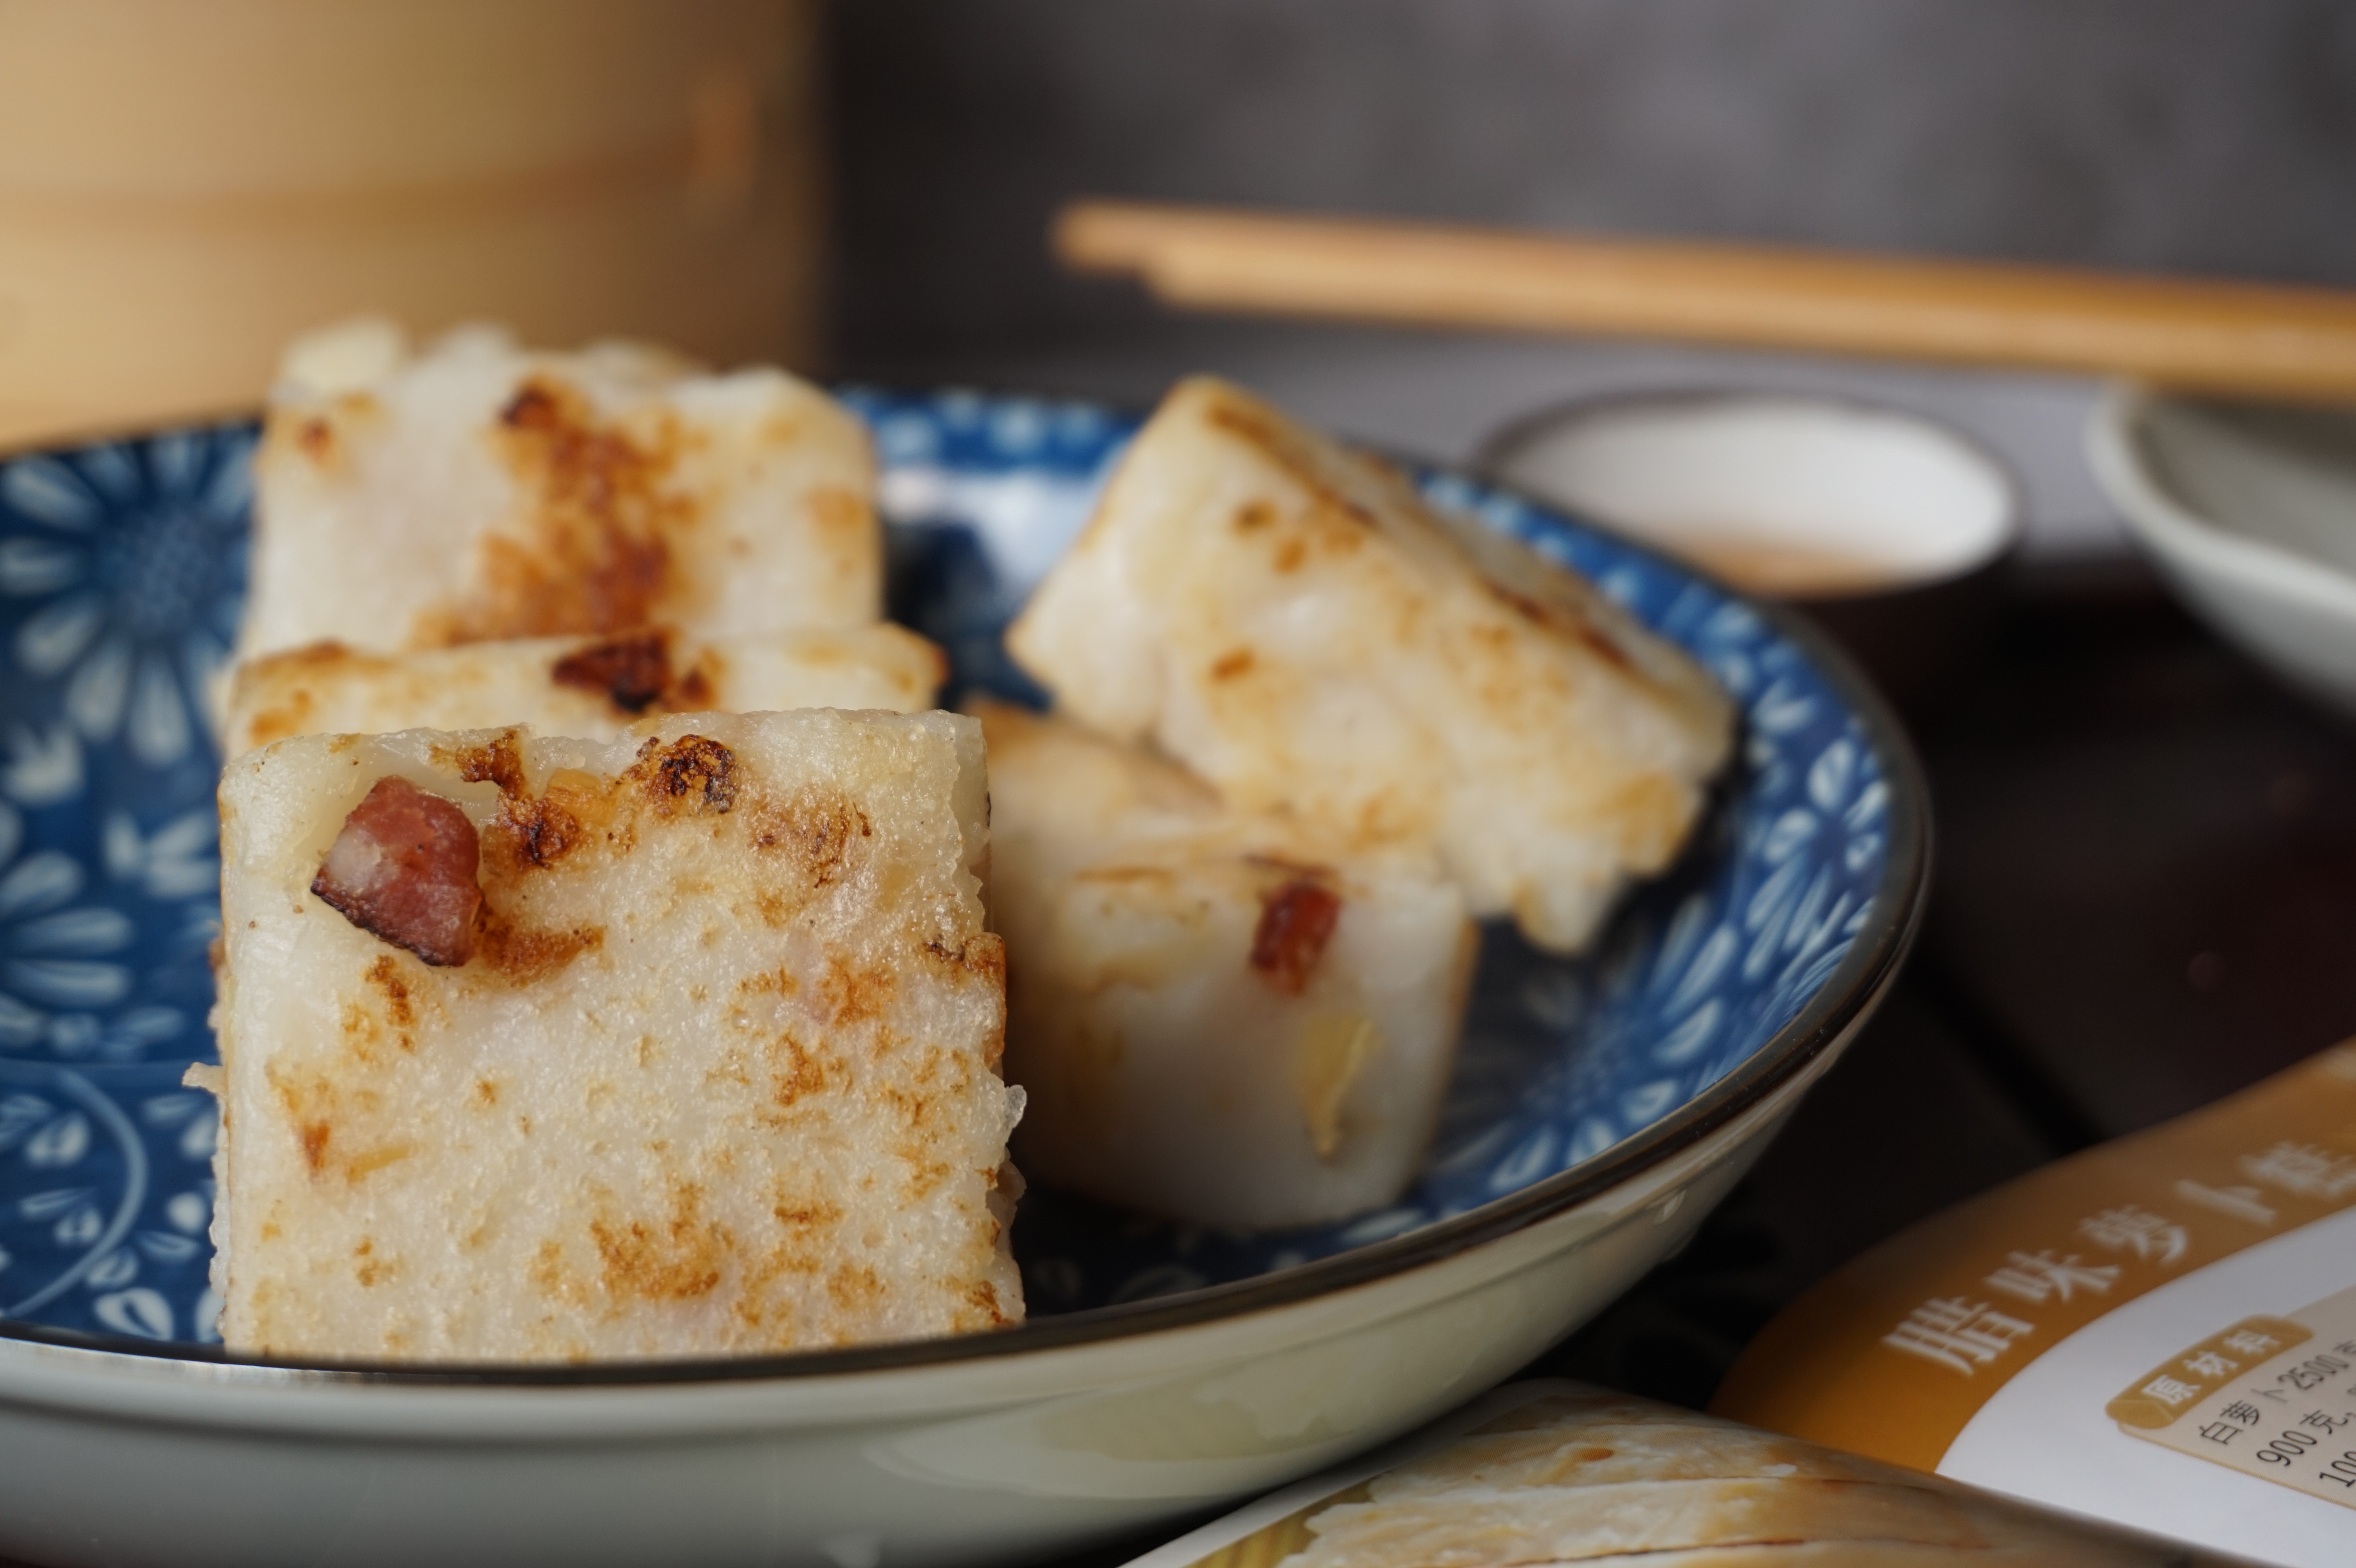 教你在家做出广东传统的点心腊味萝卜糕,做法真的很简单!